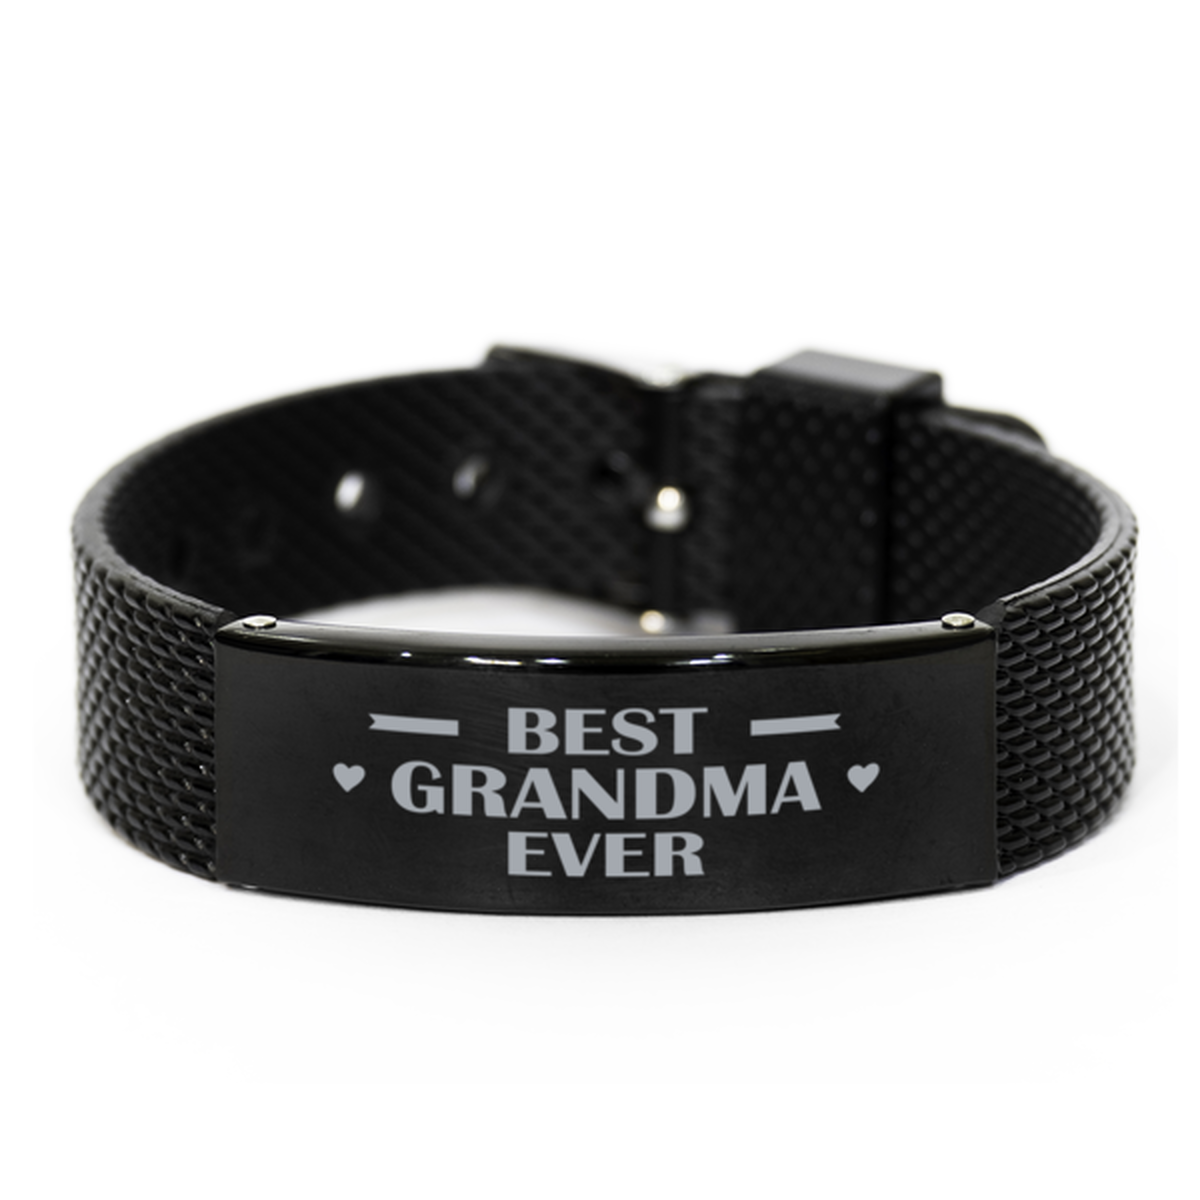 Best Grandma Ever Grandma Gifts, Gag Engraved Bracelet For Grandma, Best Family Gifts For Women